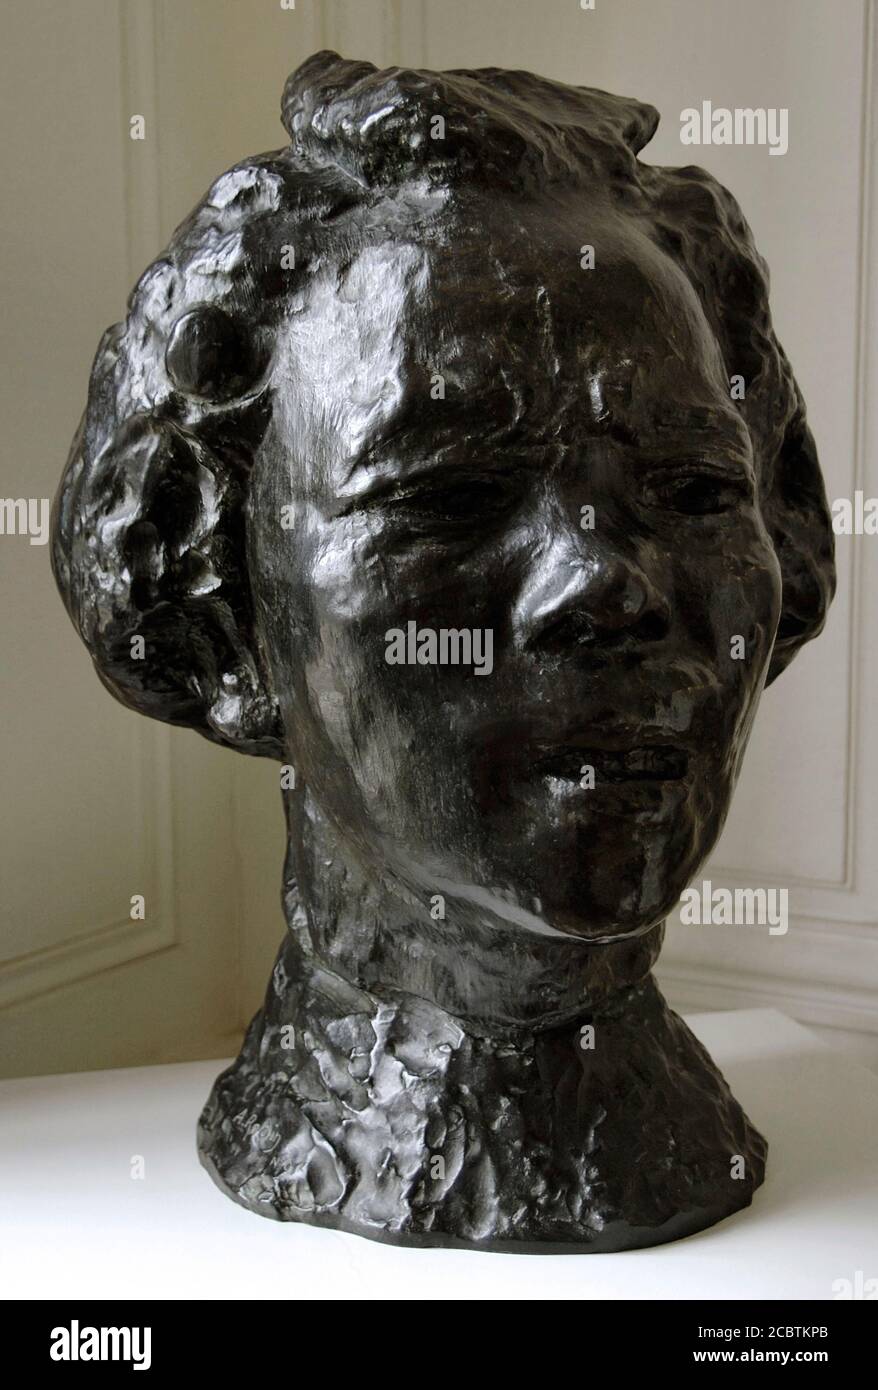 Auguste Rodin (1840-1917). Escultor francés. Hanako (1868-1945), gran máscara tipo D,1907. Bronce. Fundición Susse. Museo Rodin. París. Francia. Stock Photo